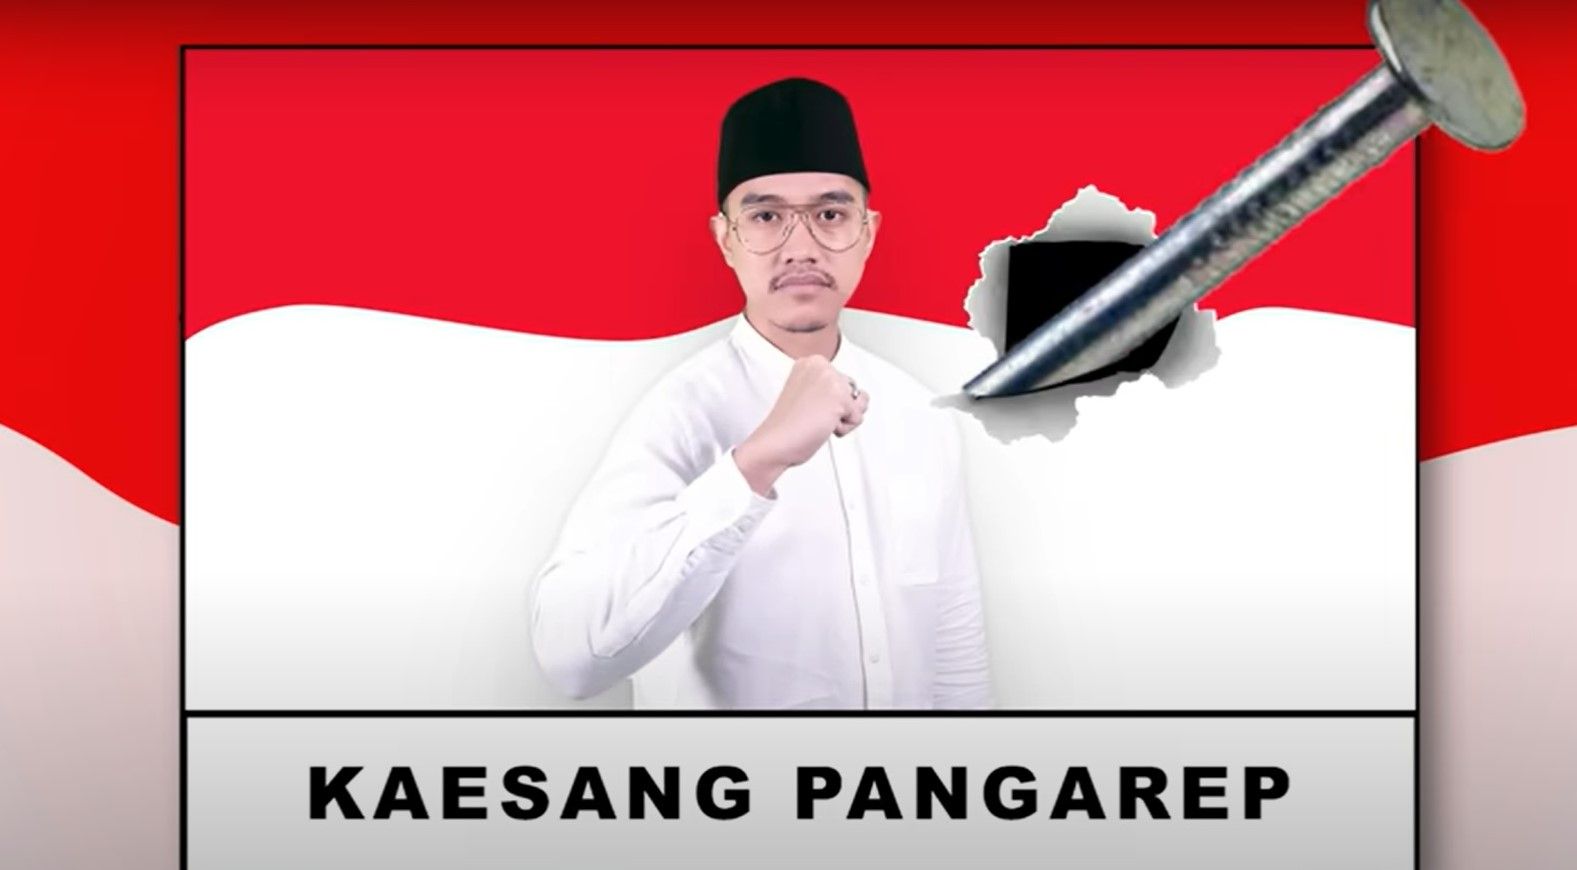 Youtube Kaesang Pangarep by GK Hebat